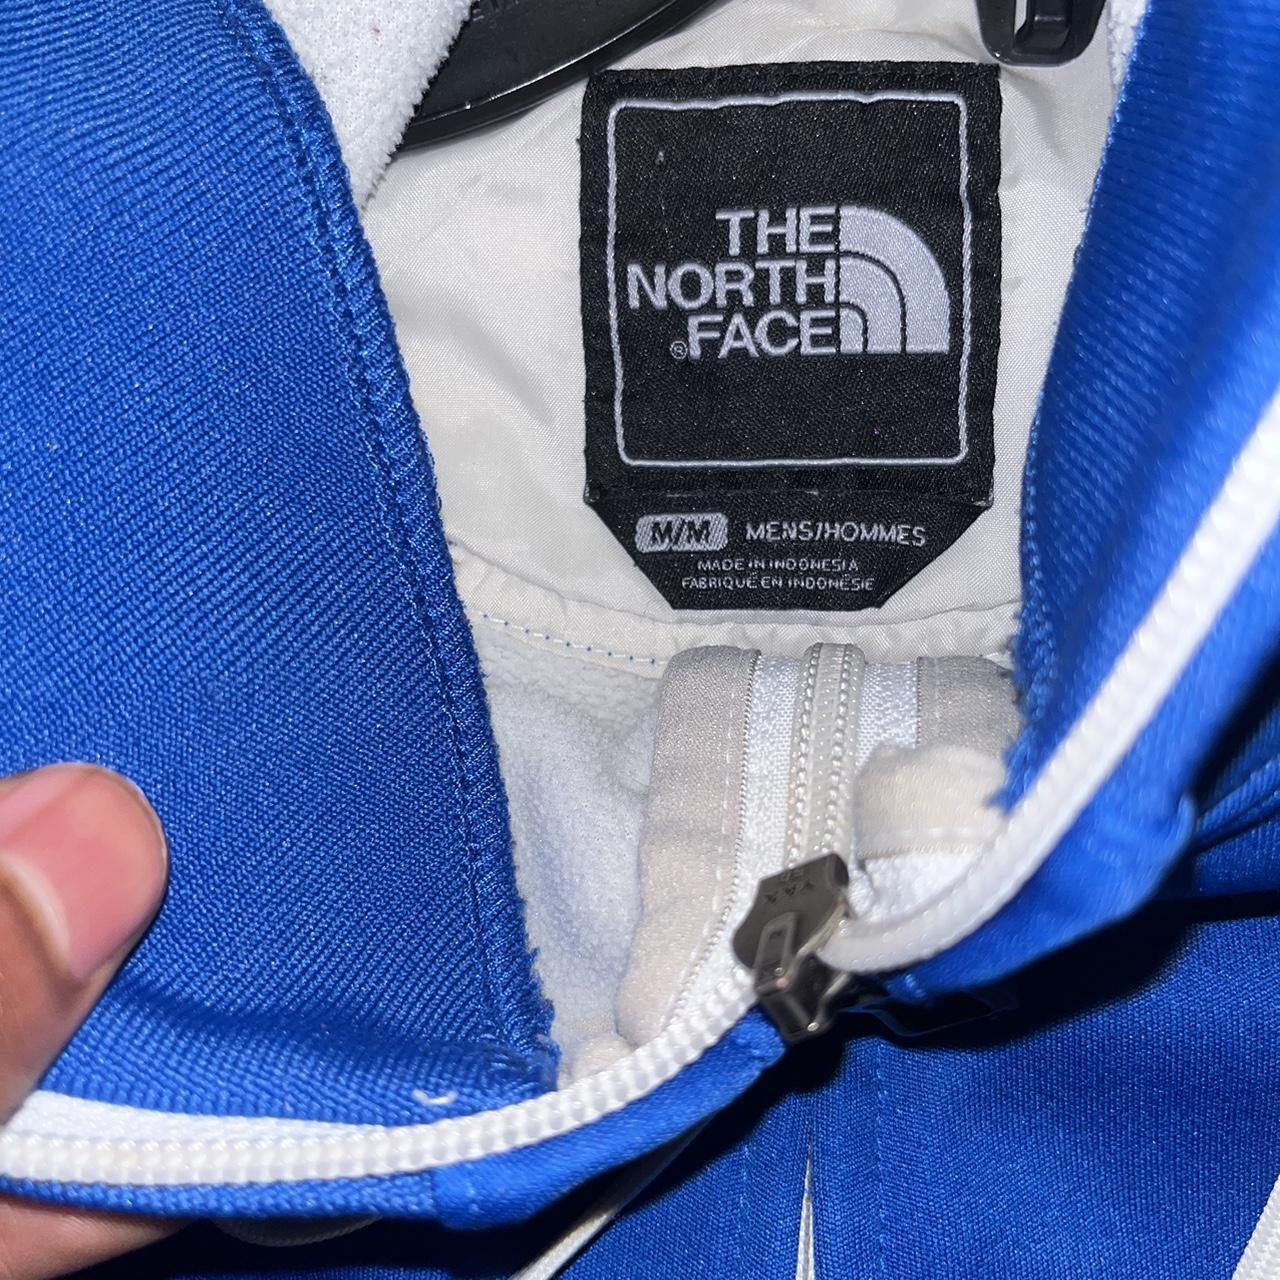 The North Face Full-Zip Hoodie nice Royal Blue!🔥... - Depop